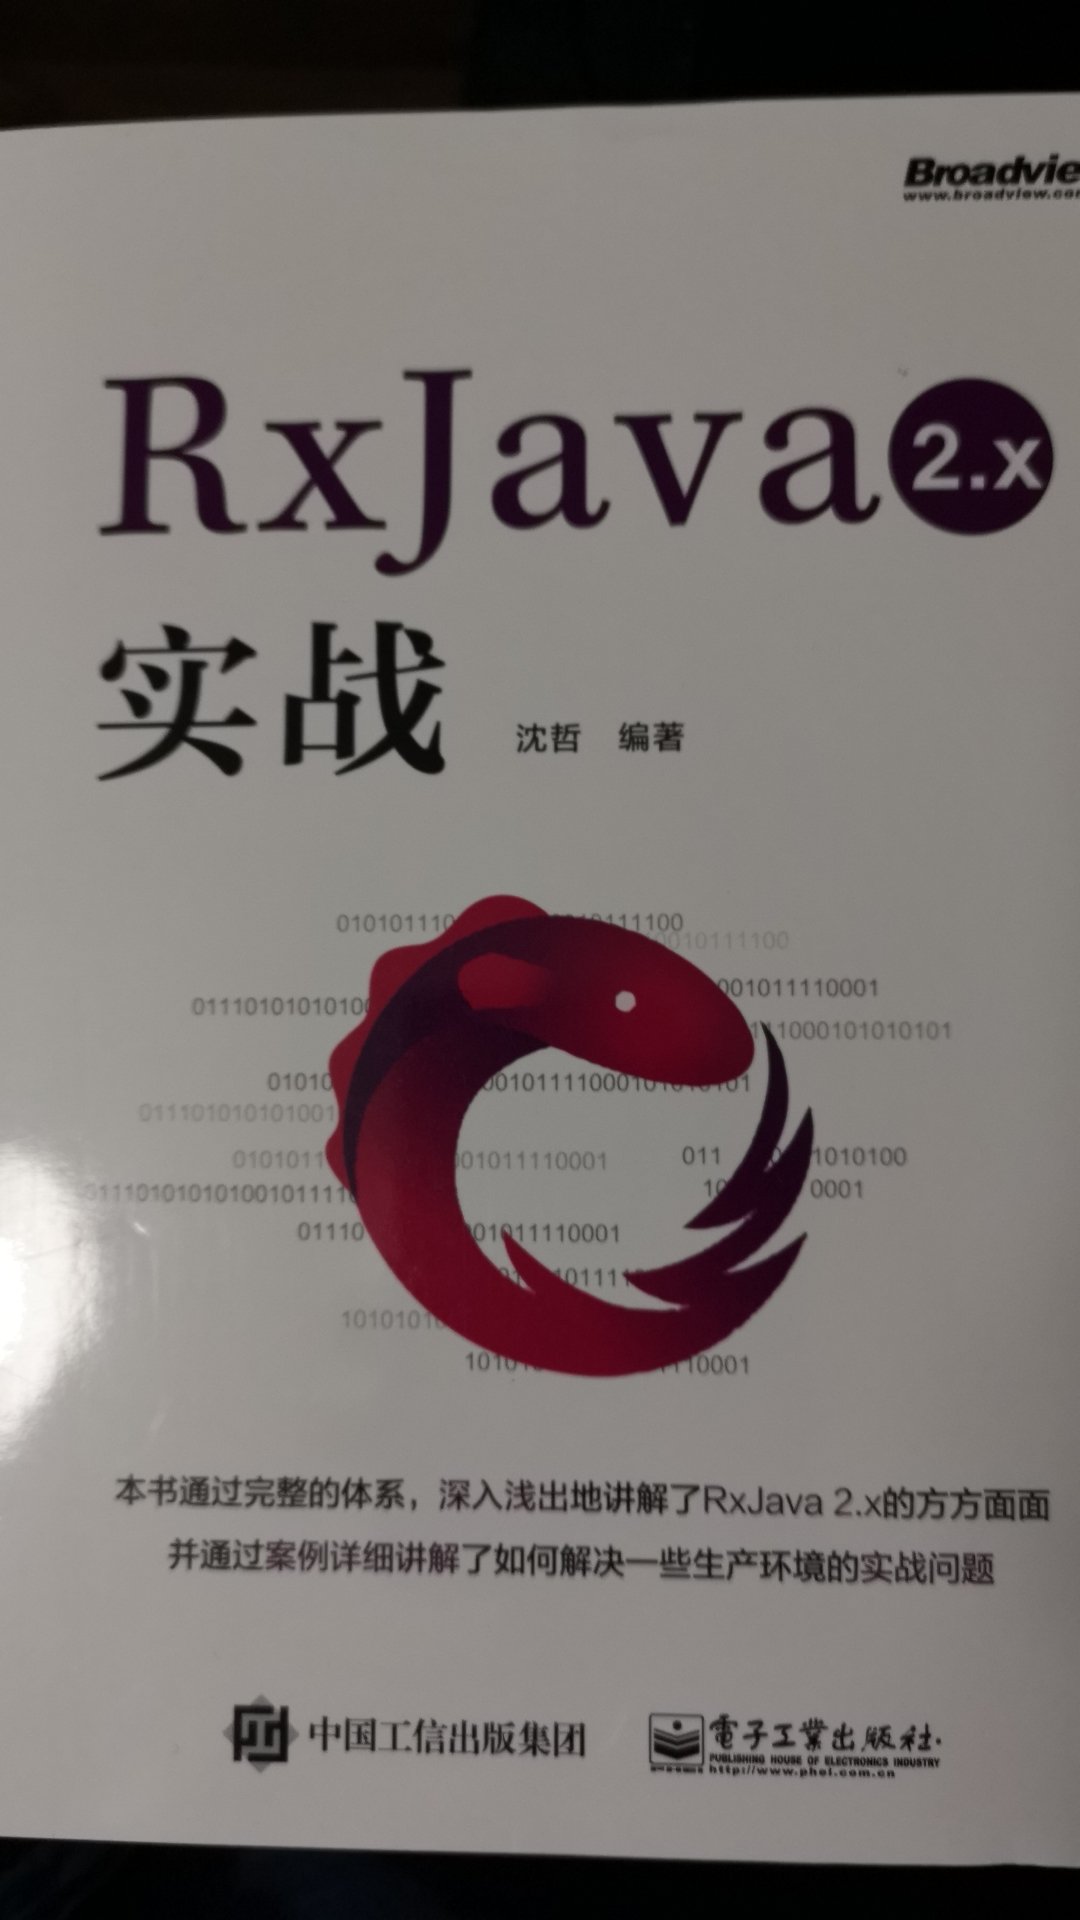 以后准备深入用Rxjava所以买了这本书帮助全面了解